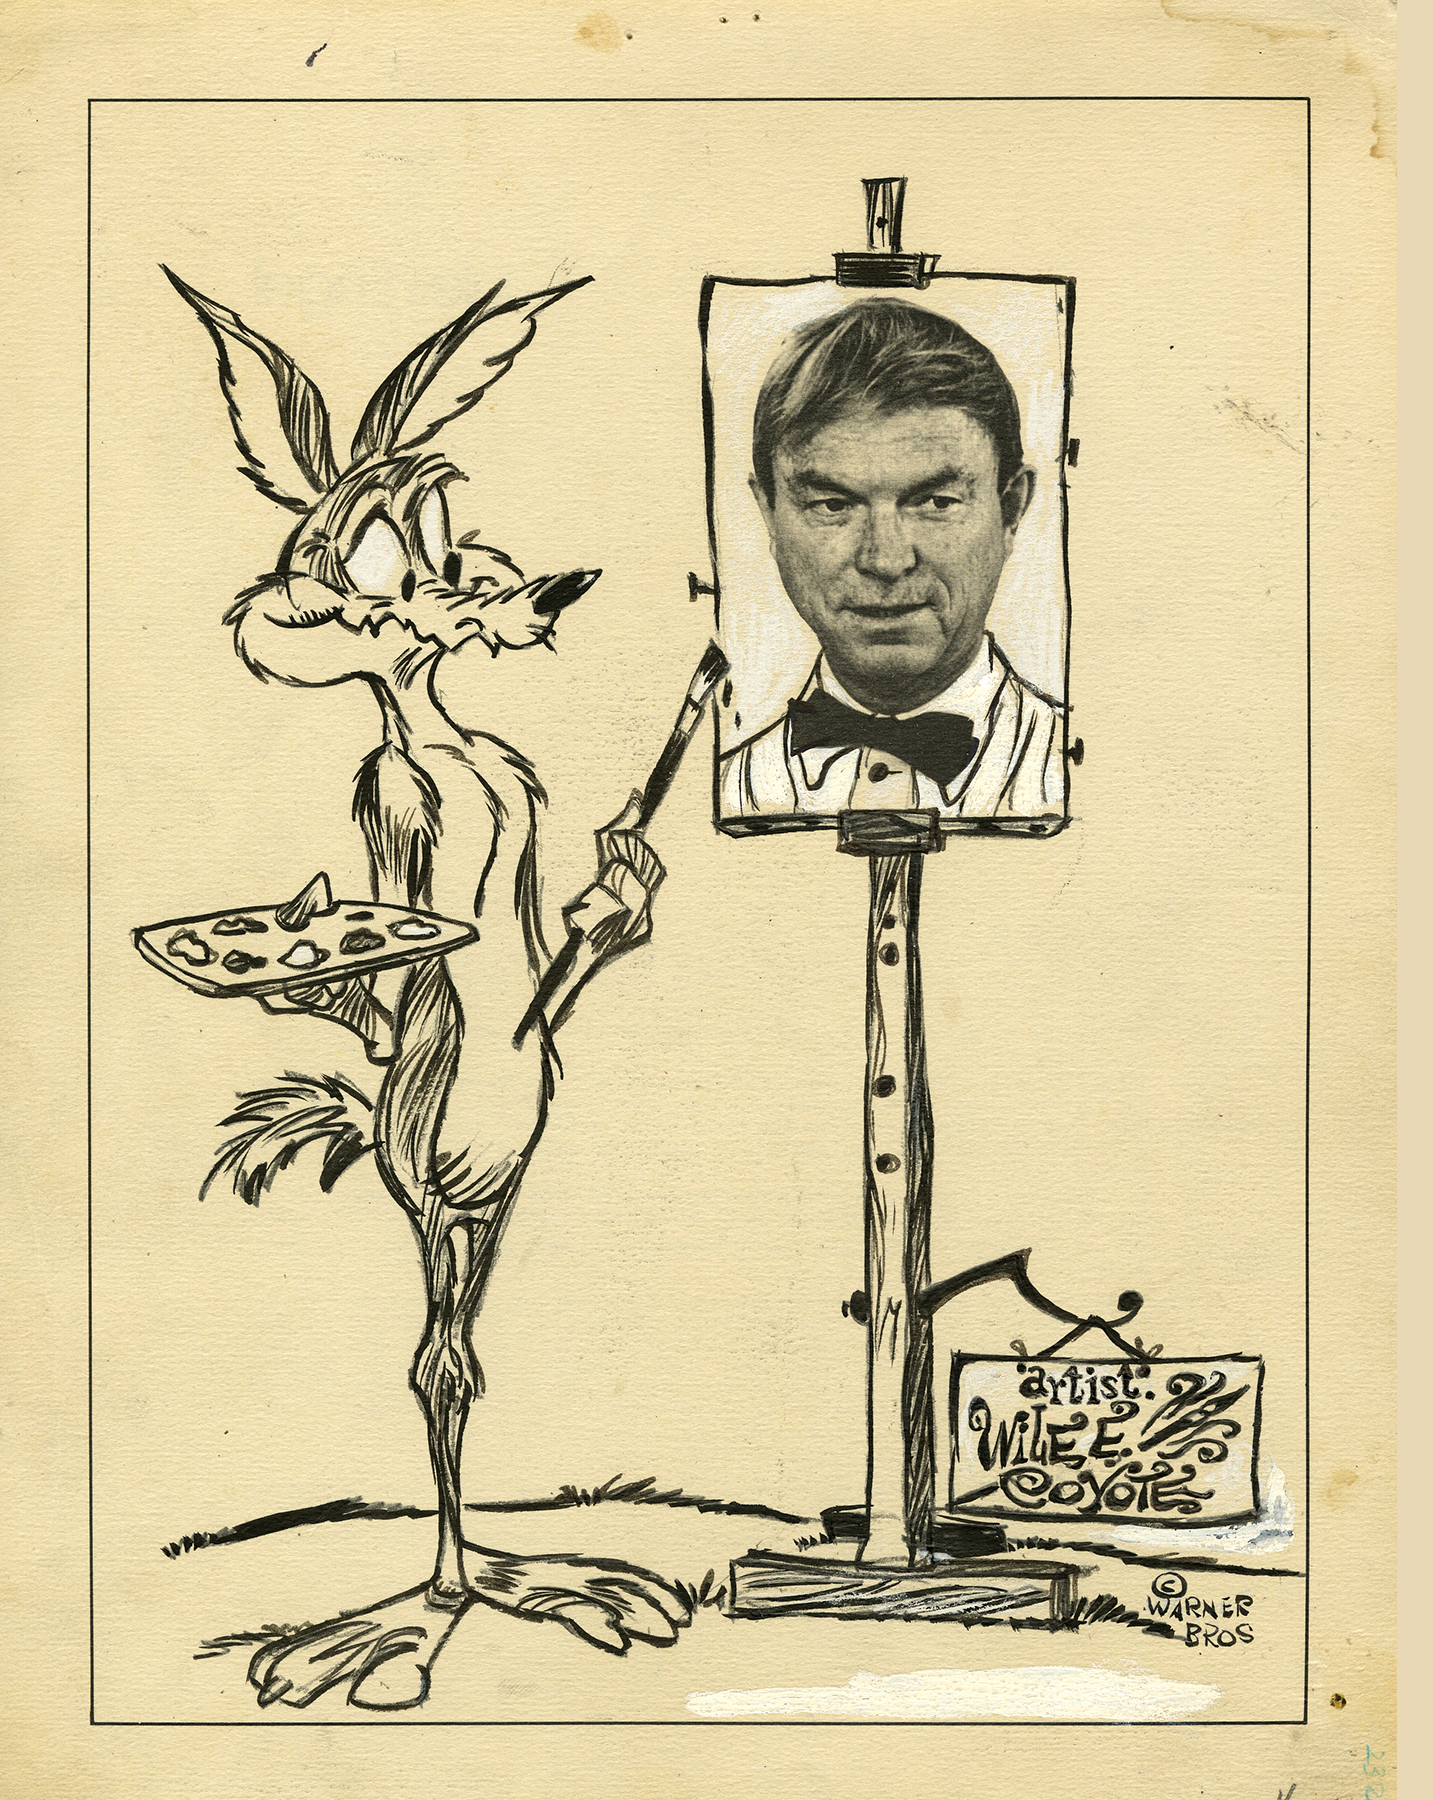  La populaire série de dessins animés Wile E. Coyote and the Road Runner a été créée par le directeur de l'animation de Warner Brothers, Chuck Jones, et est apparue pour la première fois le 17 septembre 1949. (Cartoon Art Museum) 